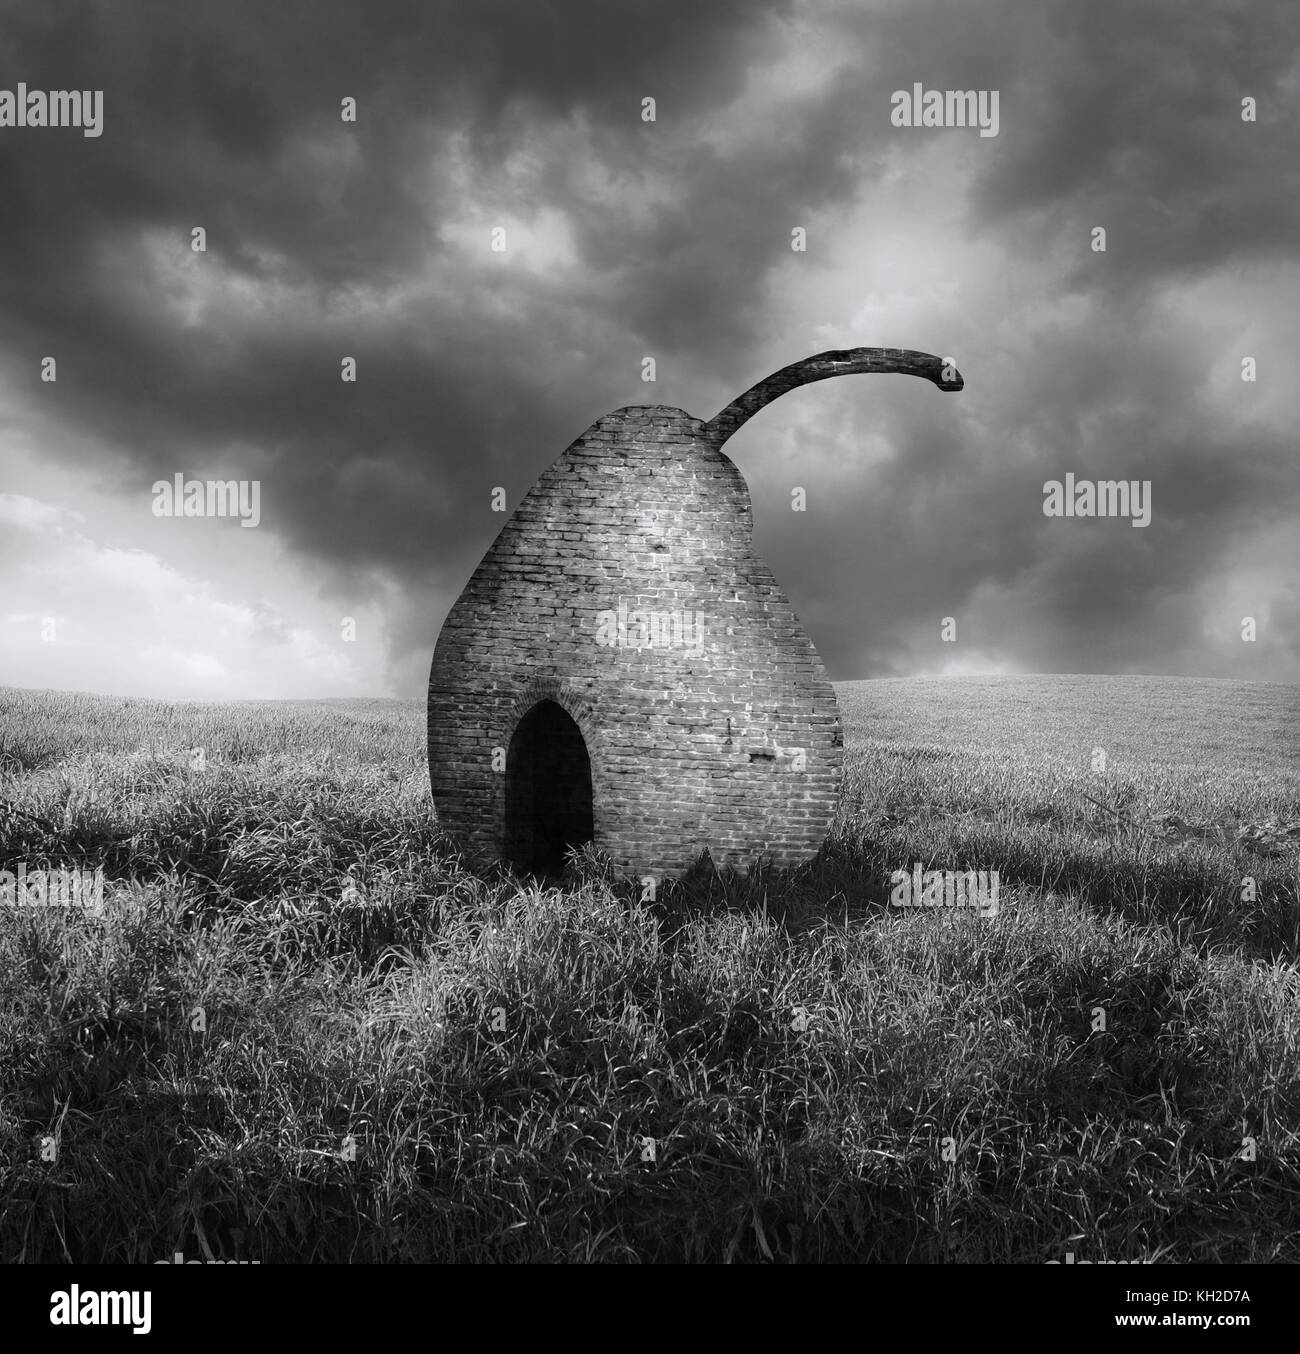 Noir et blanc élégant image surréaliste représentant une brique pearl isolé dans un paysage de campagne Banque D'Images